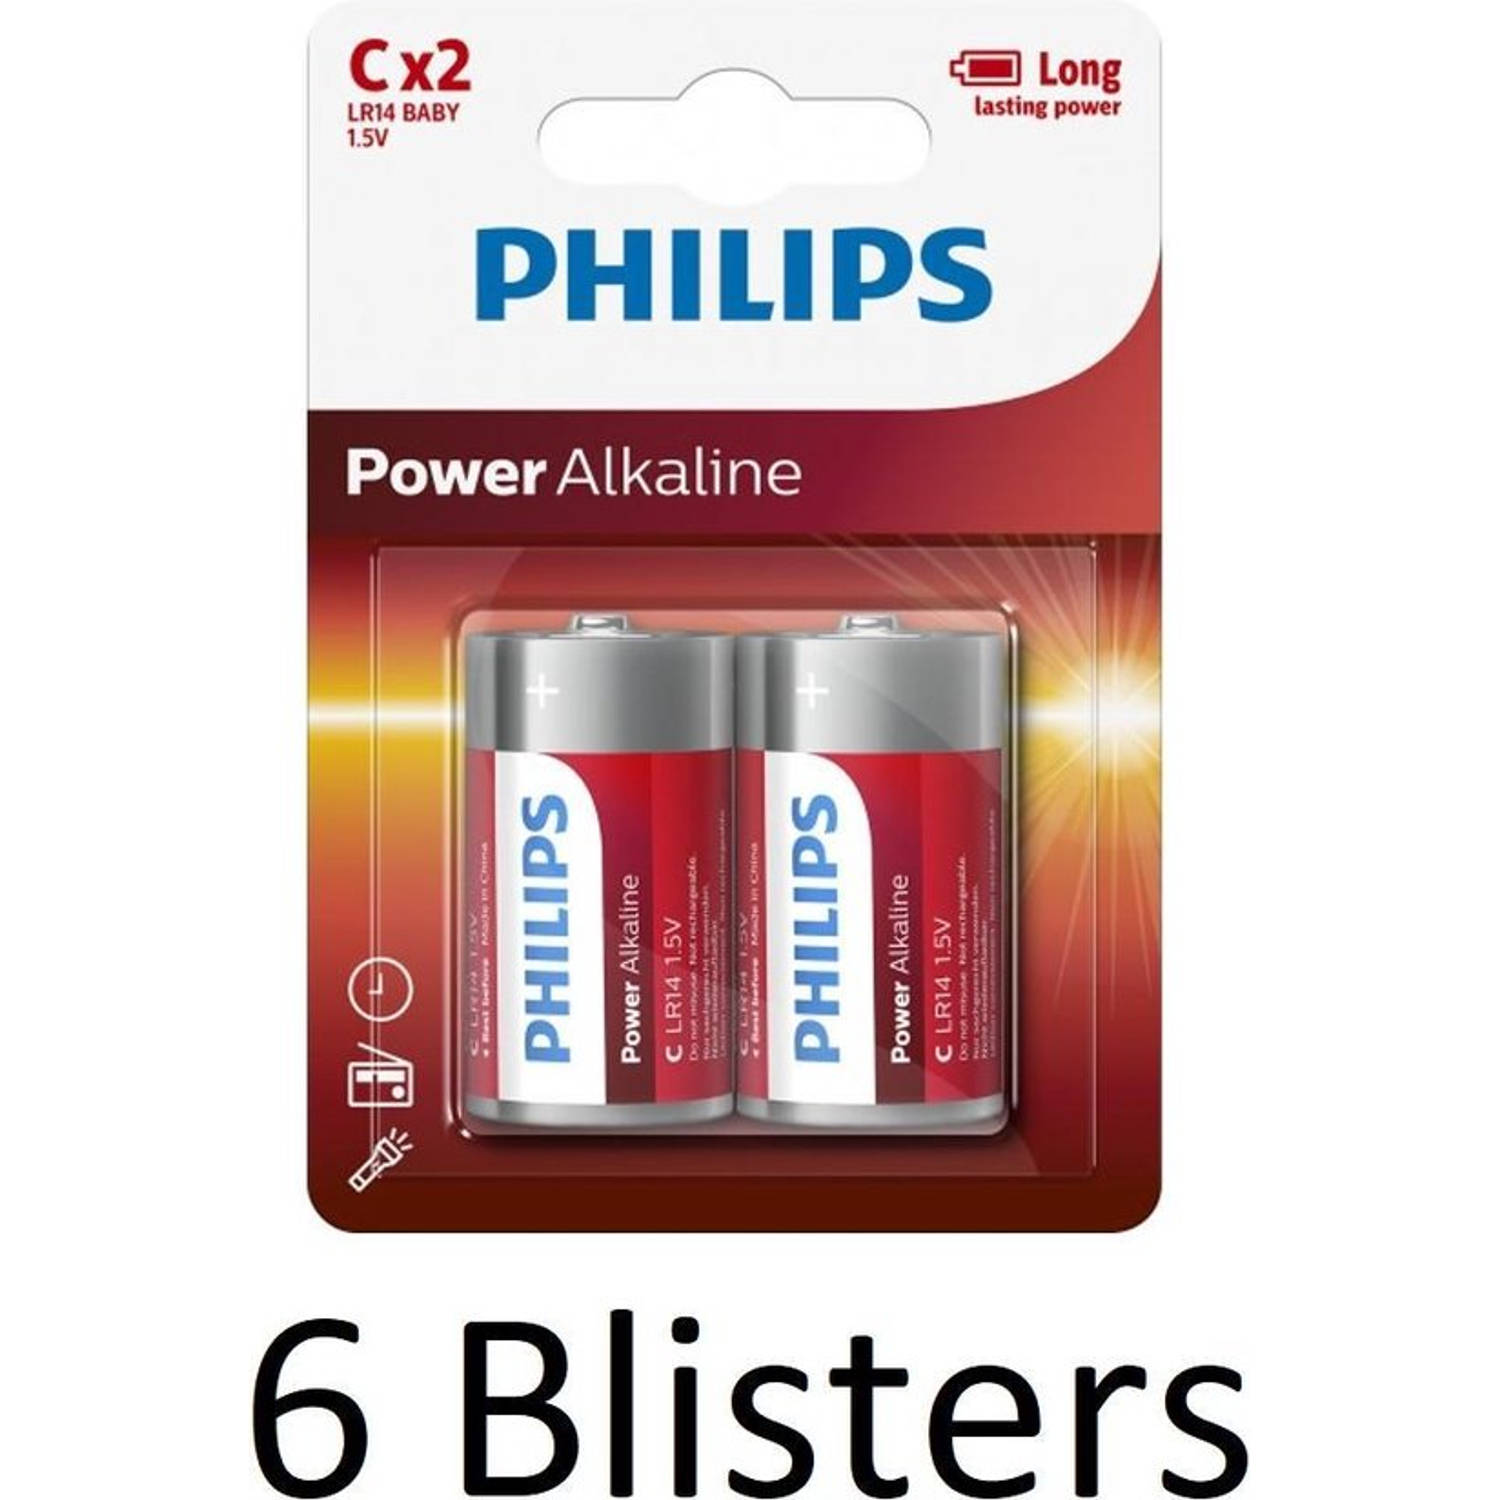 12 Stuks (6 blister a 2st) - Philips Power C/LR14 alkalinebatterij